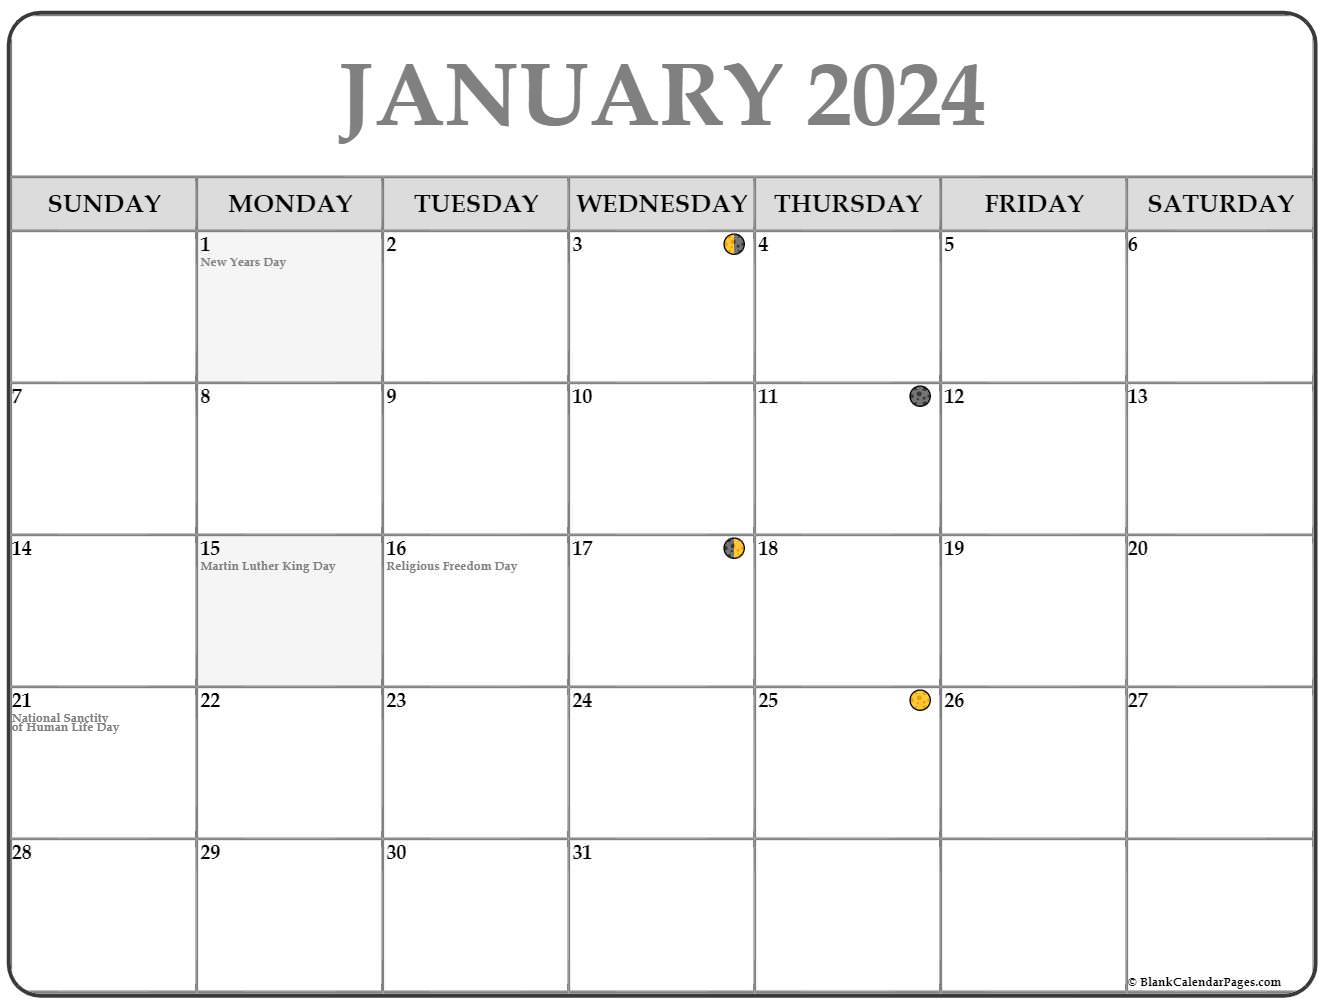 January 2021 Lunar Calendar Moon Phase Calendar